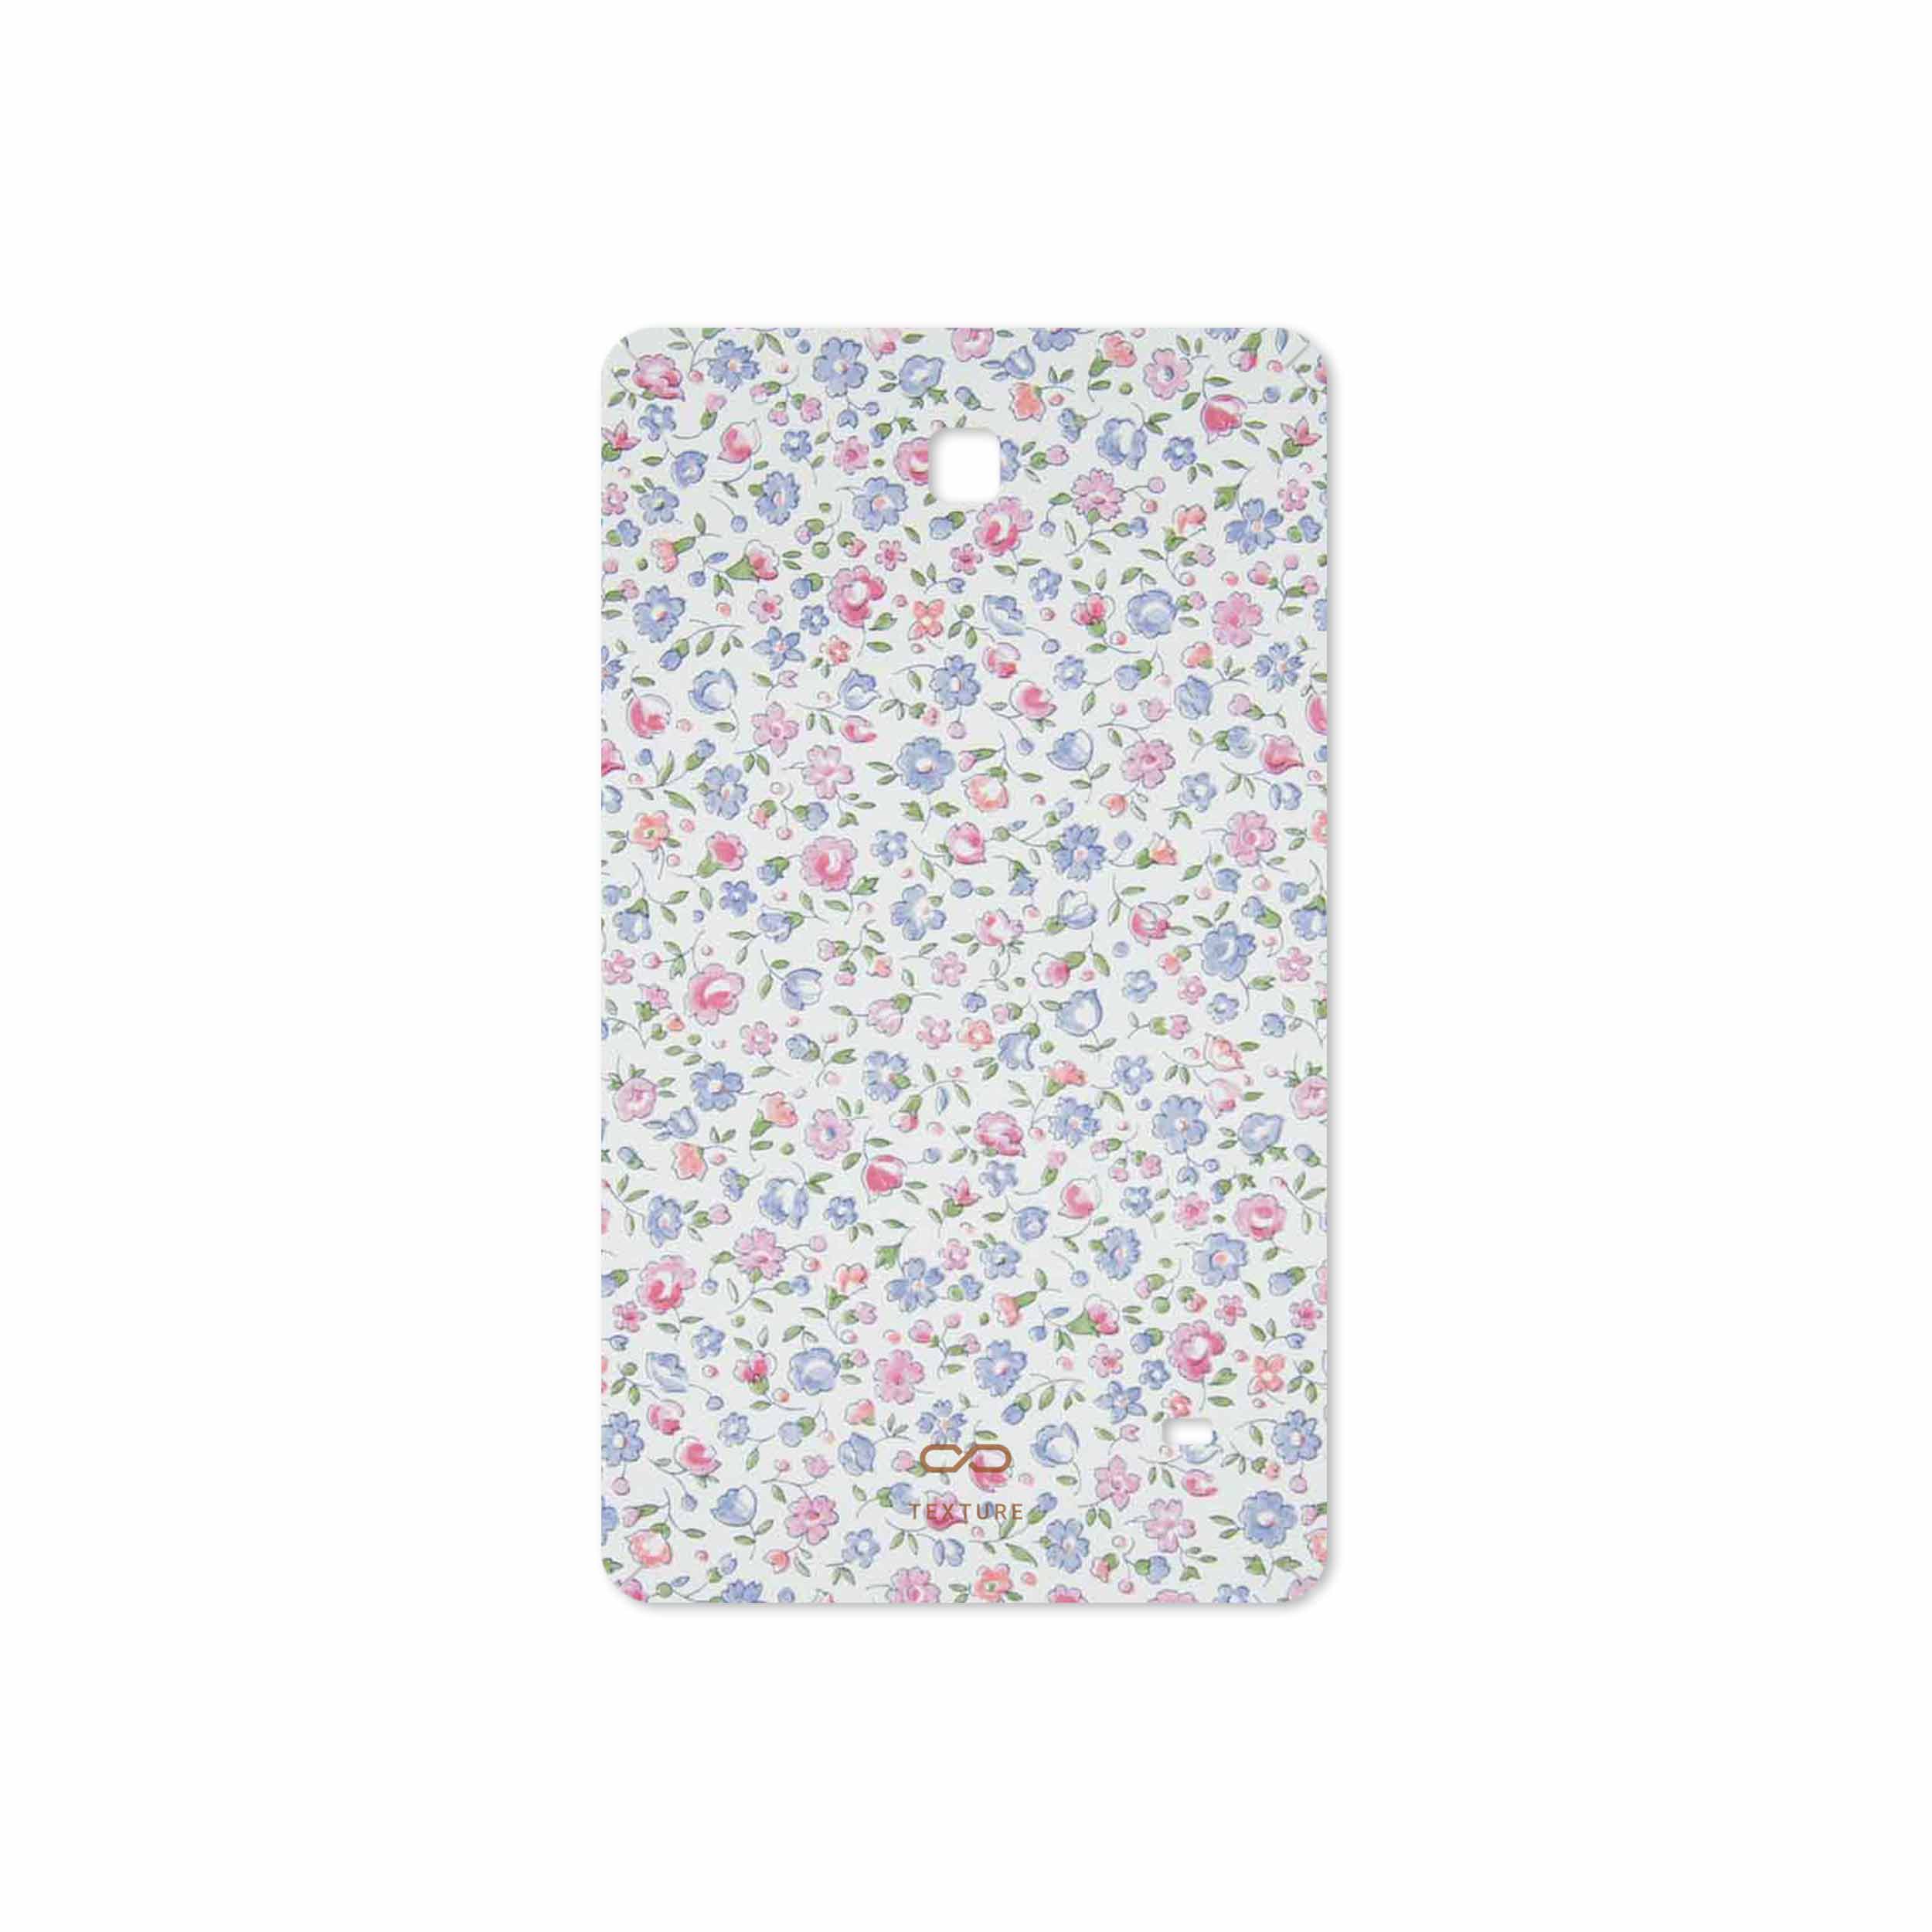 برچسب پوششی ماهوت مدل Painted-Flowers مناسب برای تبلت سامسونگ Galaxy Tab 4 7.0 2014 T231